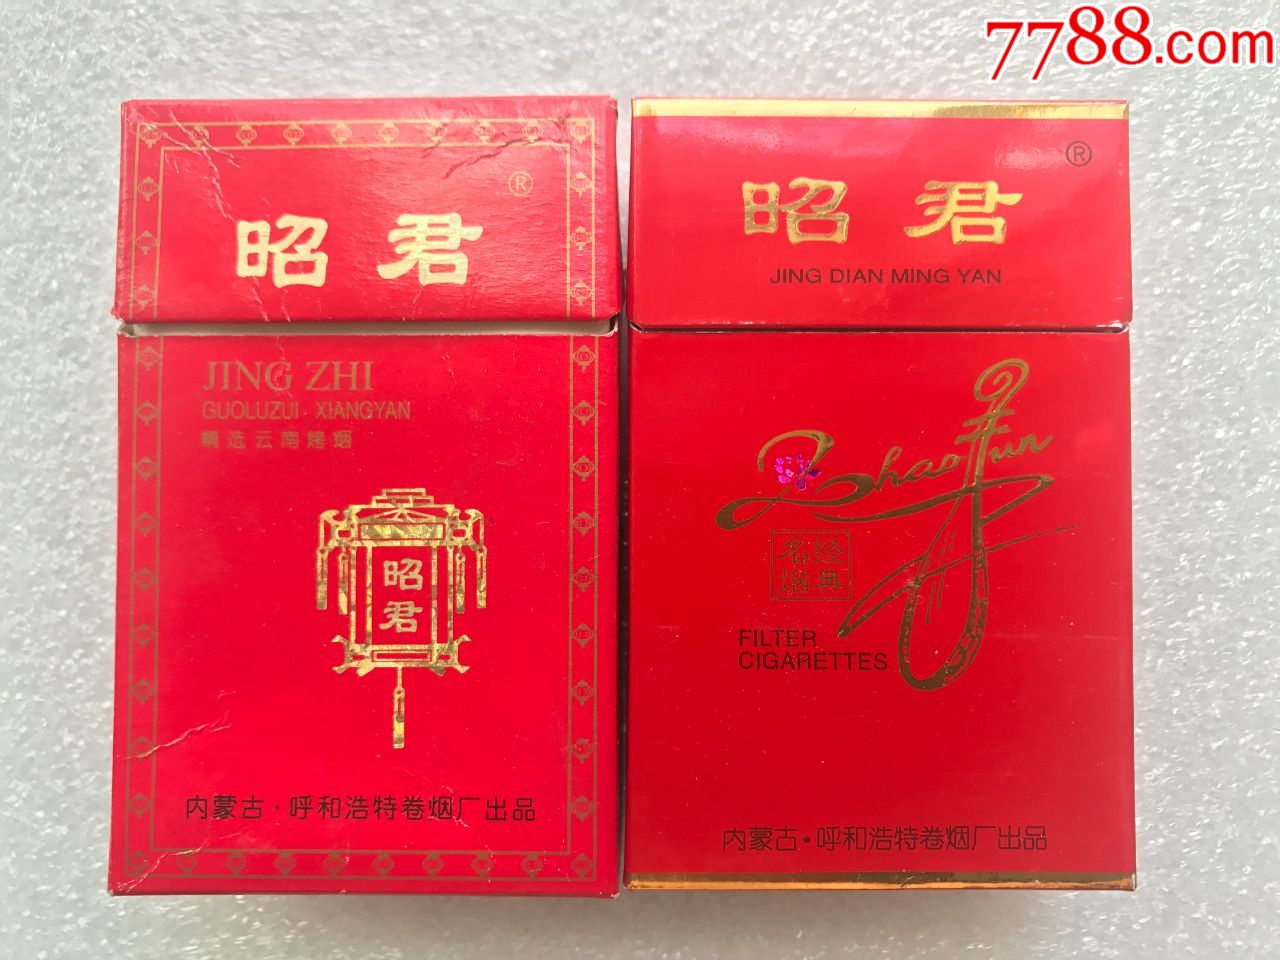 昭君和亲香烟红盒图片